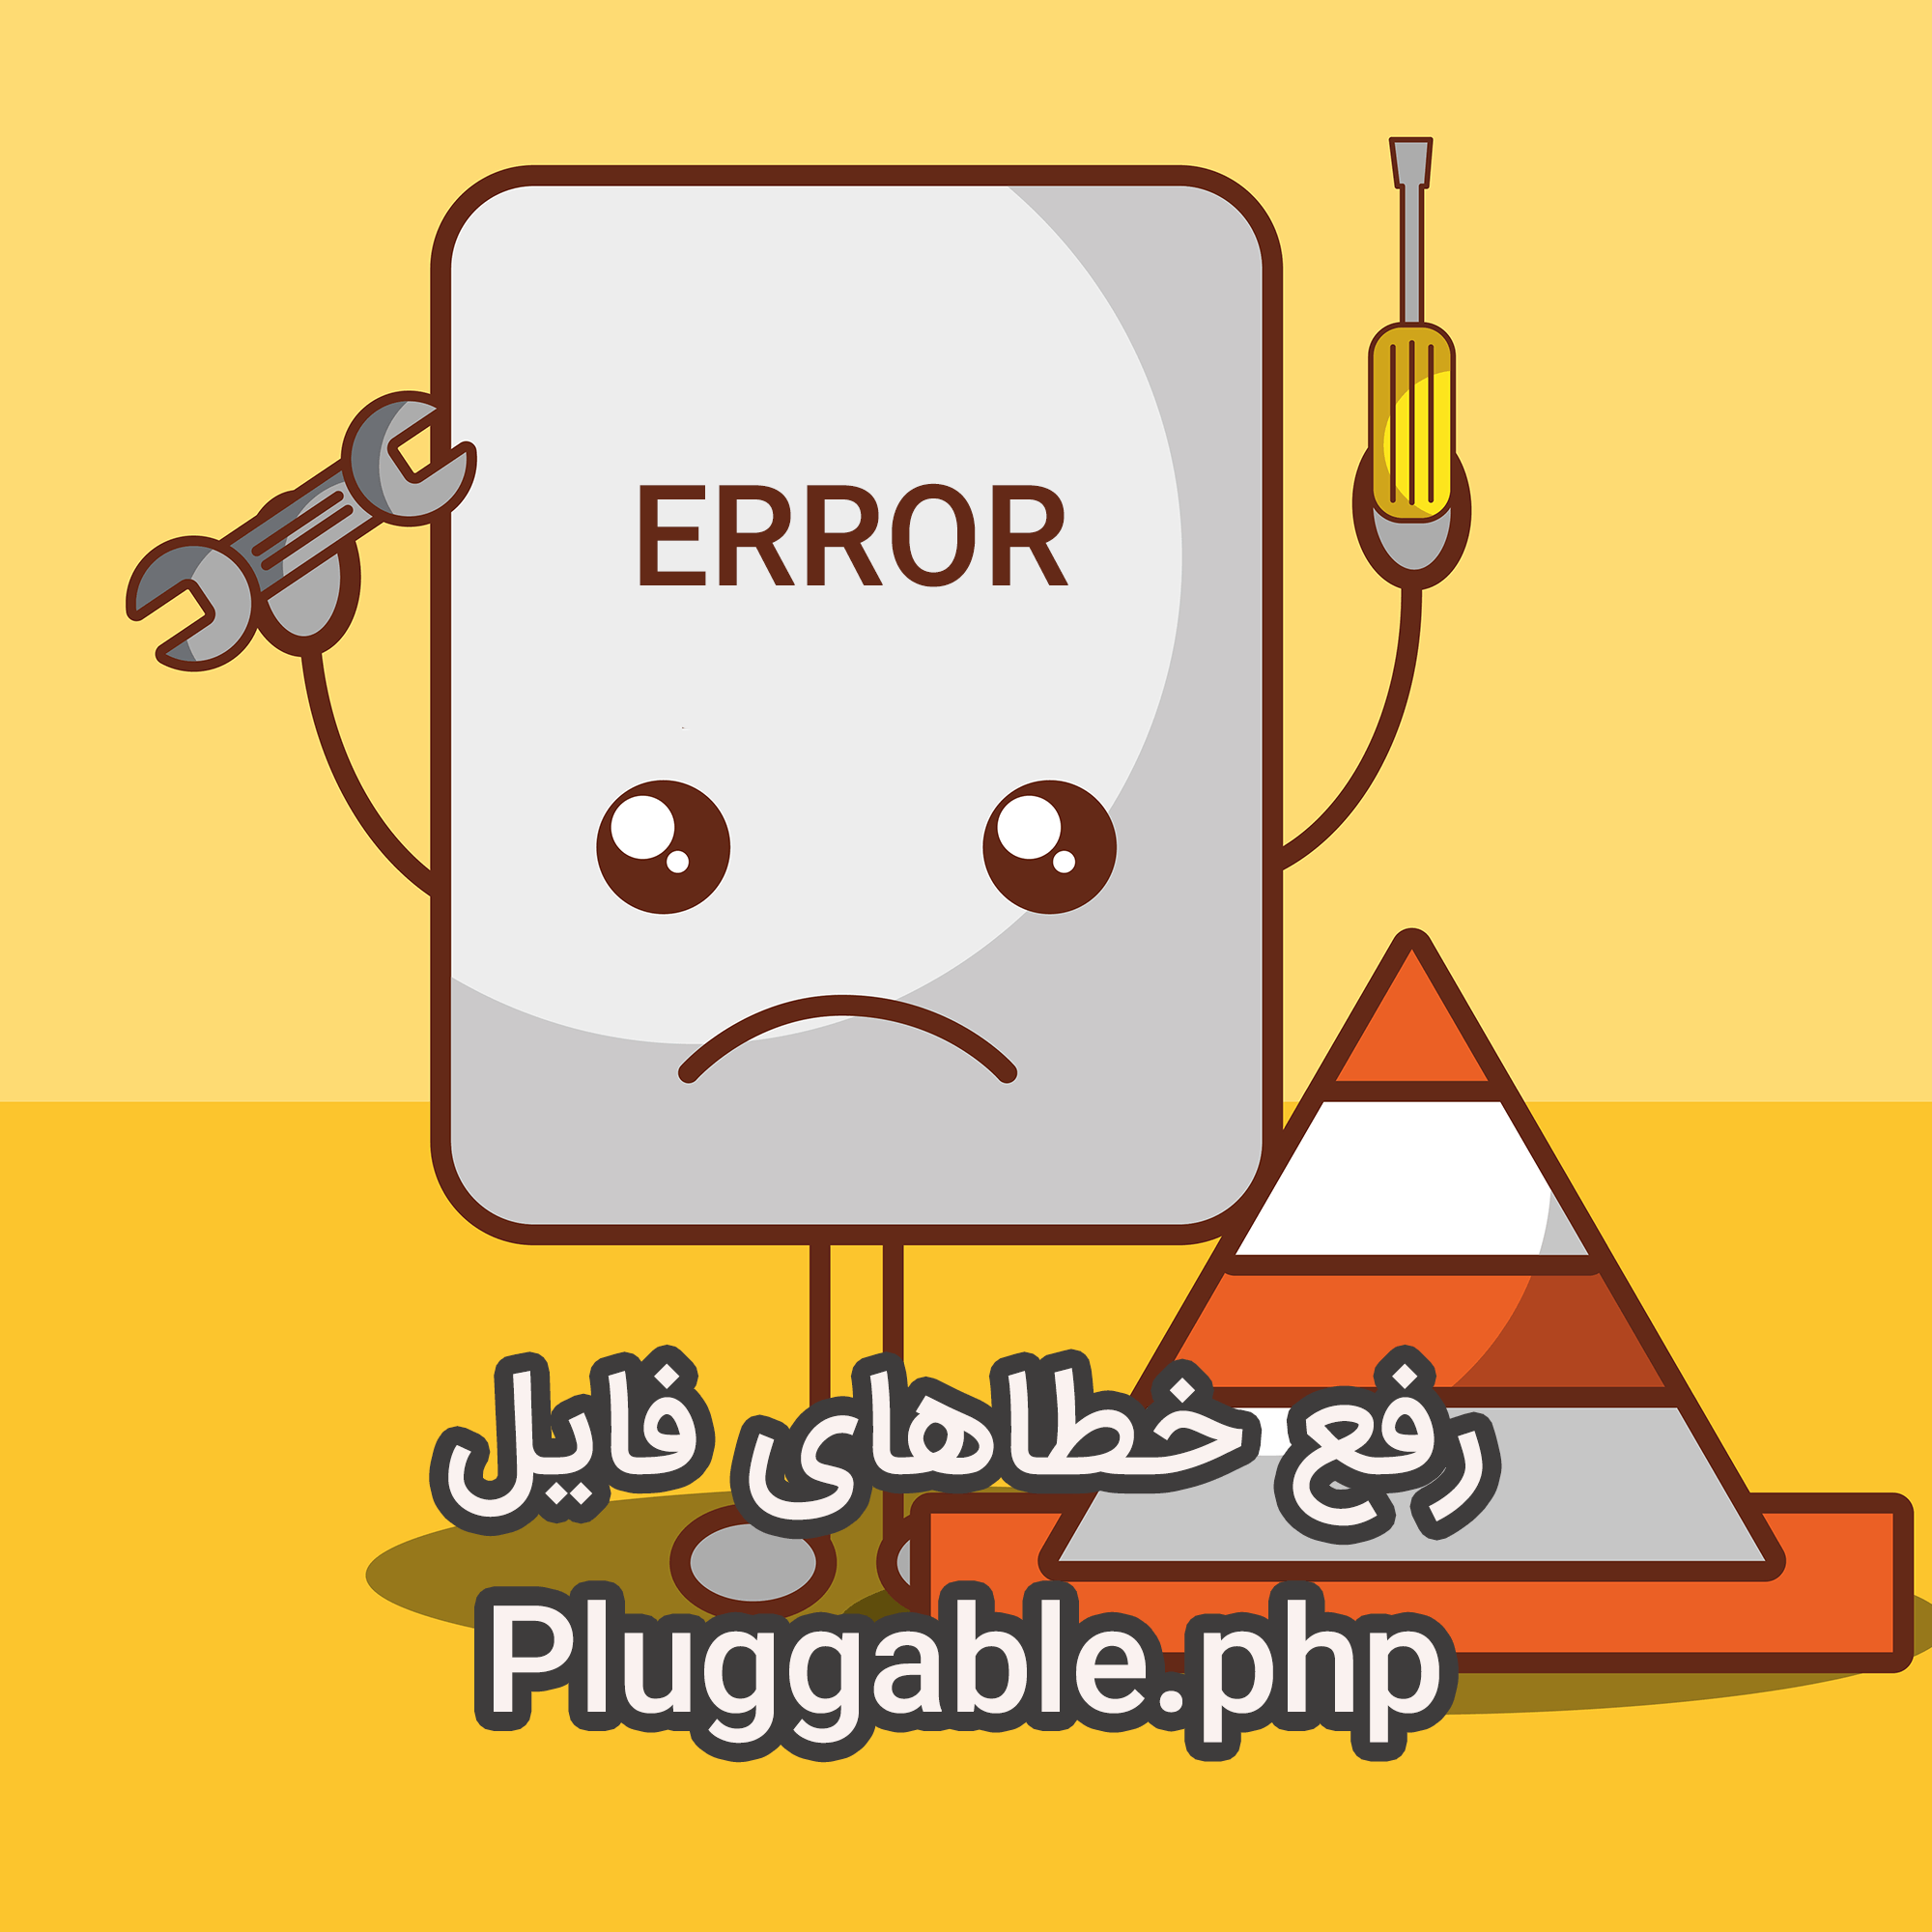 ارور pluggable.php در وردپرس و روش حل آن